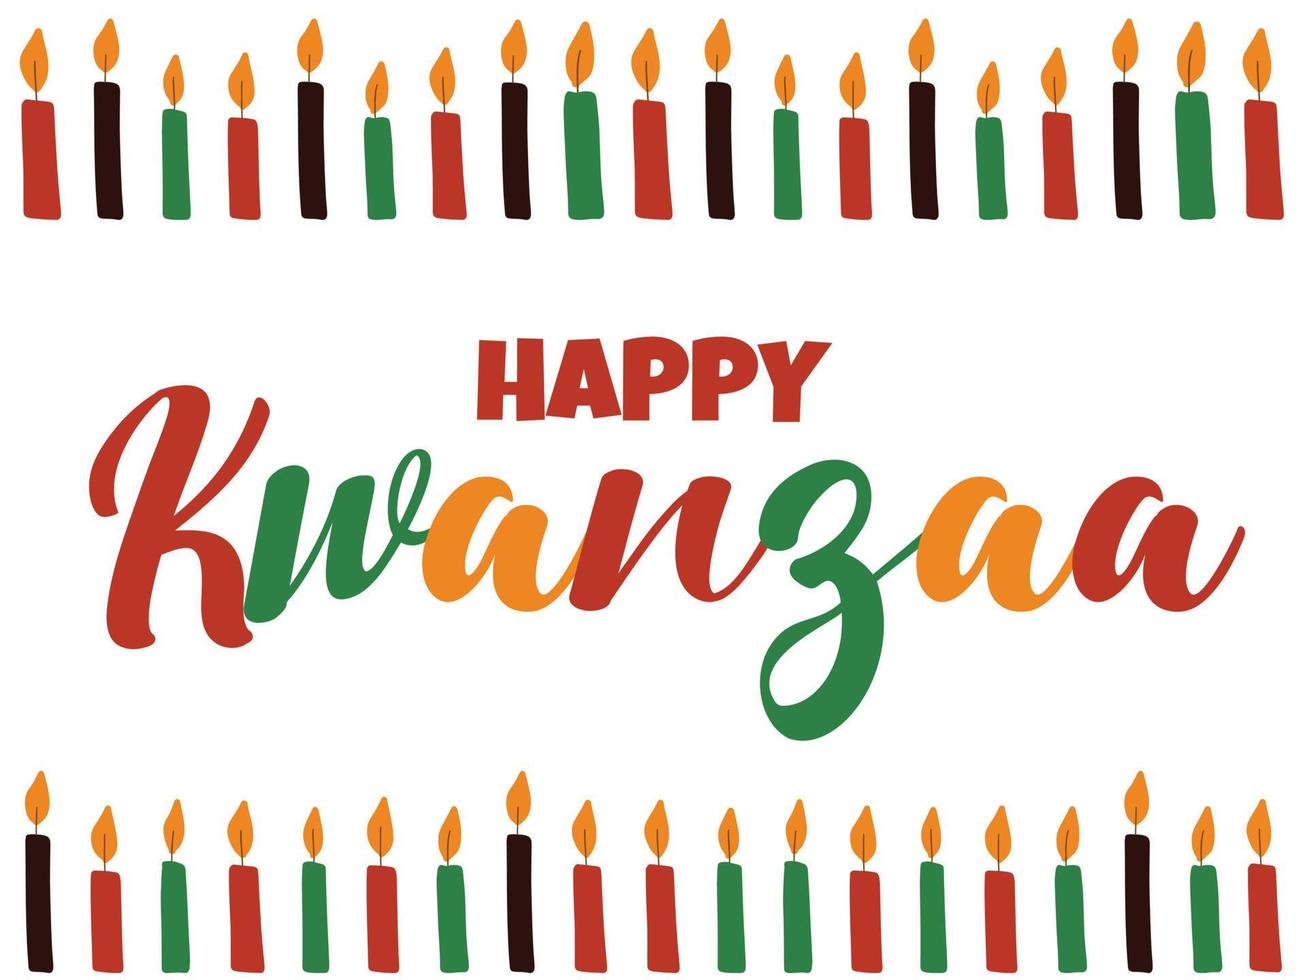 Happy Kwanzaa - Banner mit Kerzen und kursiver Kalligraphiebeschriftung. afroamerikanischer ethnischer Erbe kultureller Feiertag. bunte helle Grußkarte, Social-Media-Post vektor